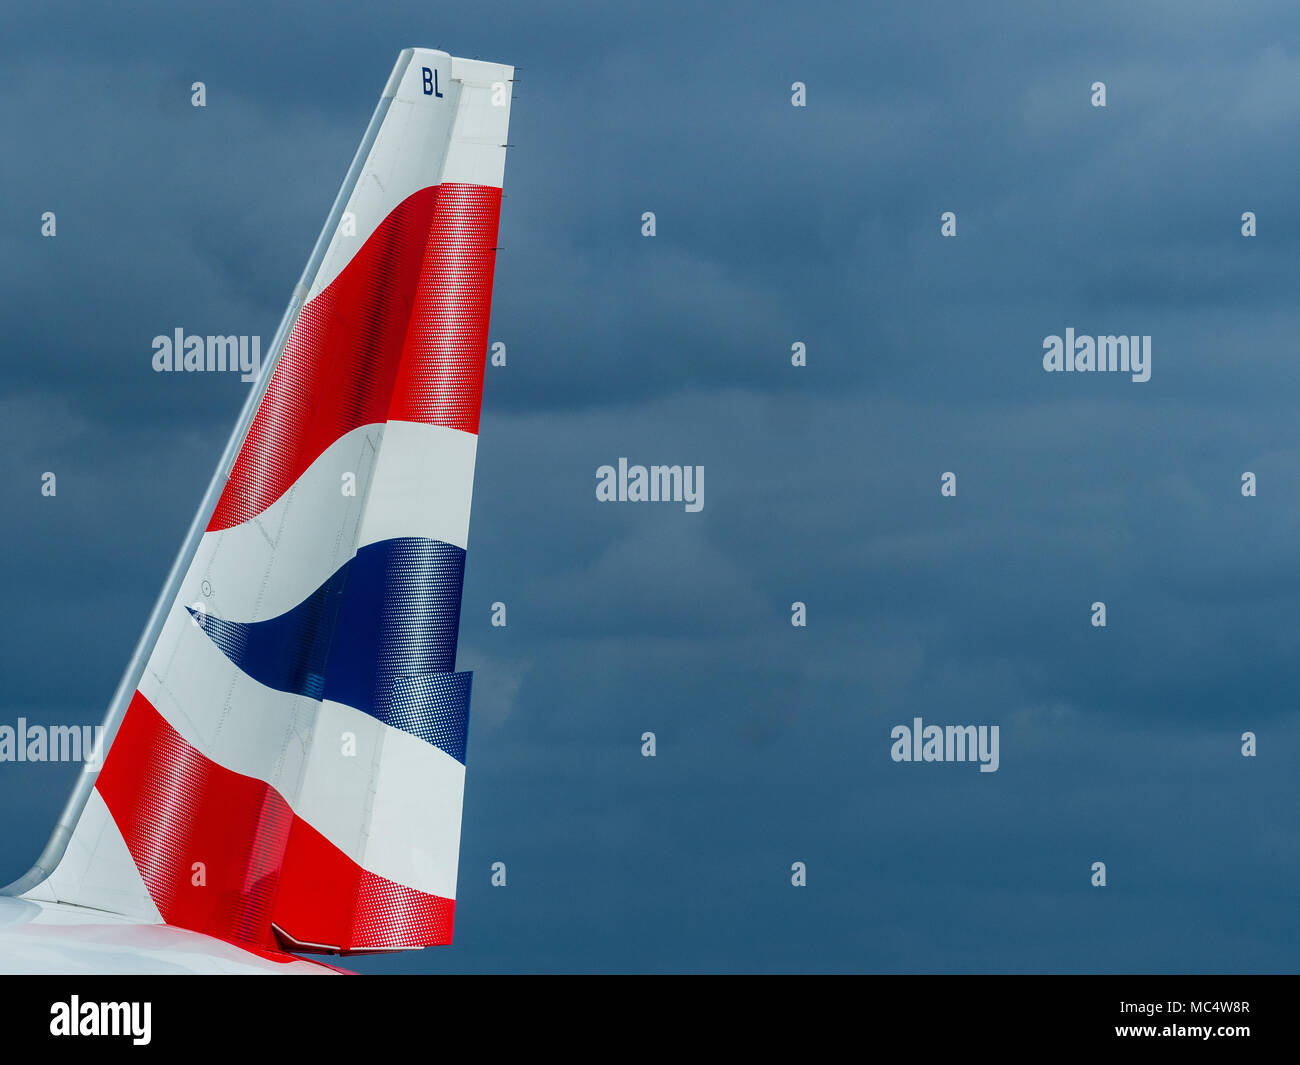 British Airways pinna di coda - pinna di coda di una BA Boeing 777 contro le nuvole scure Foto Stock